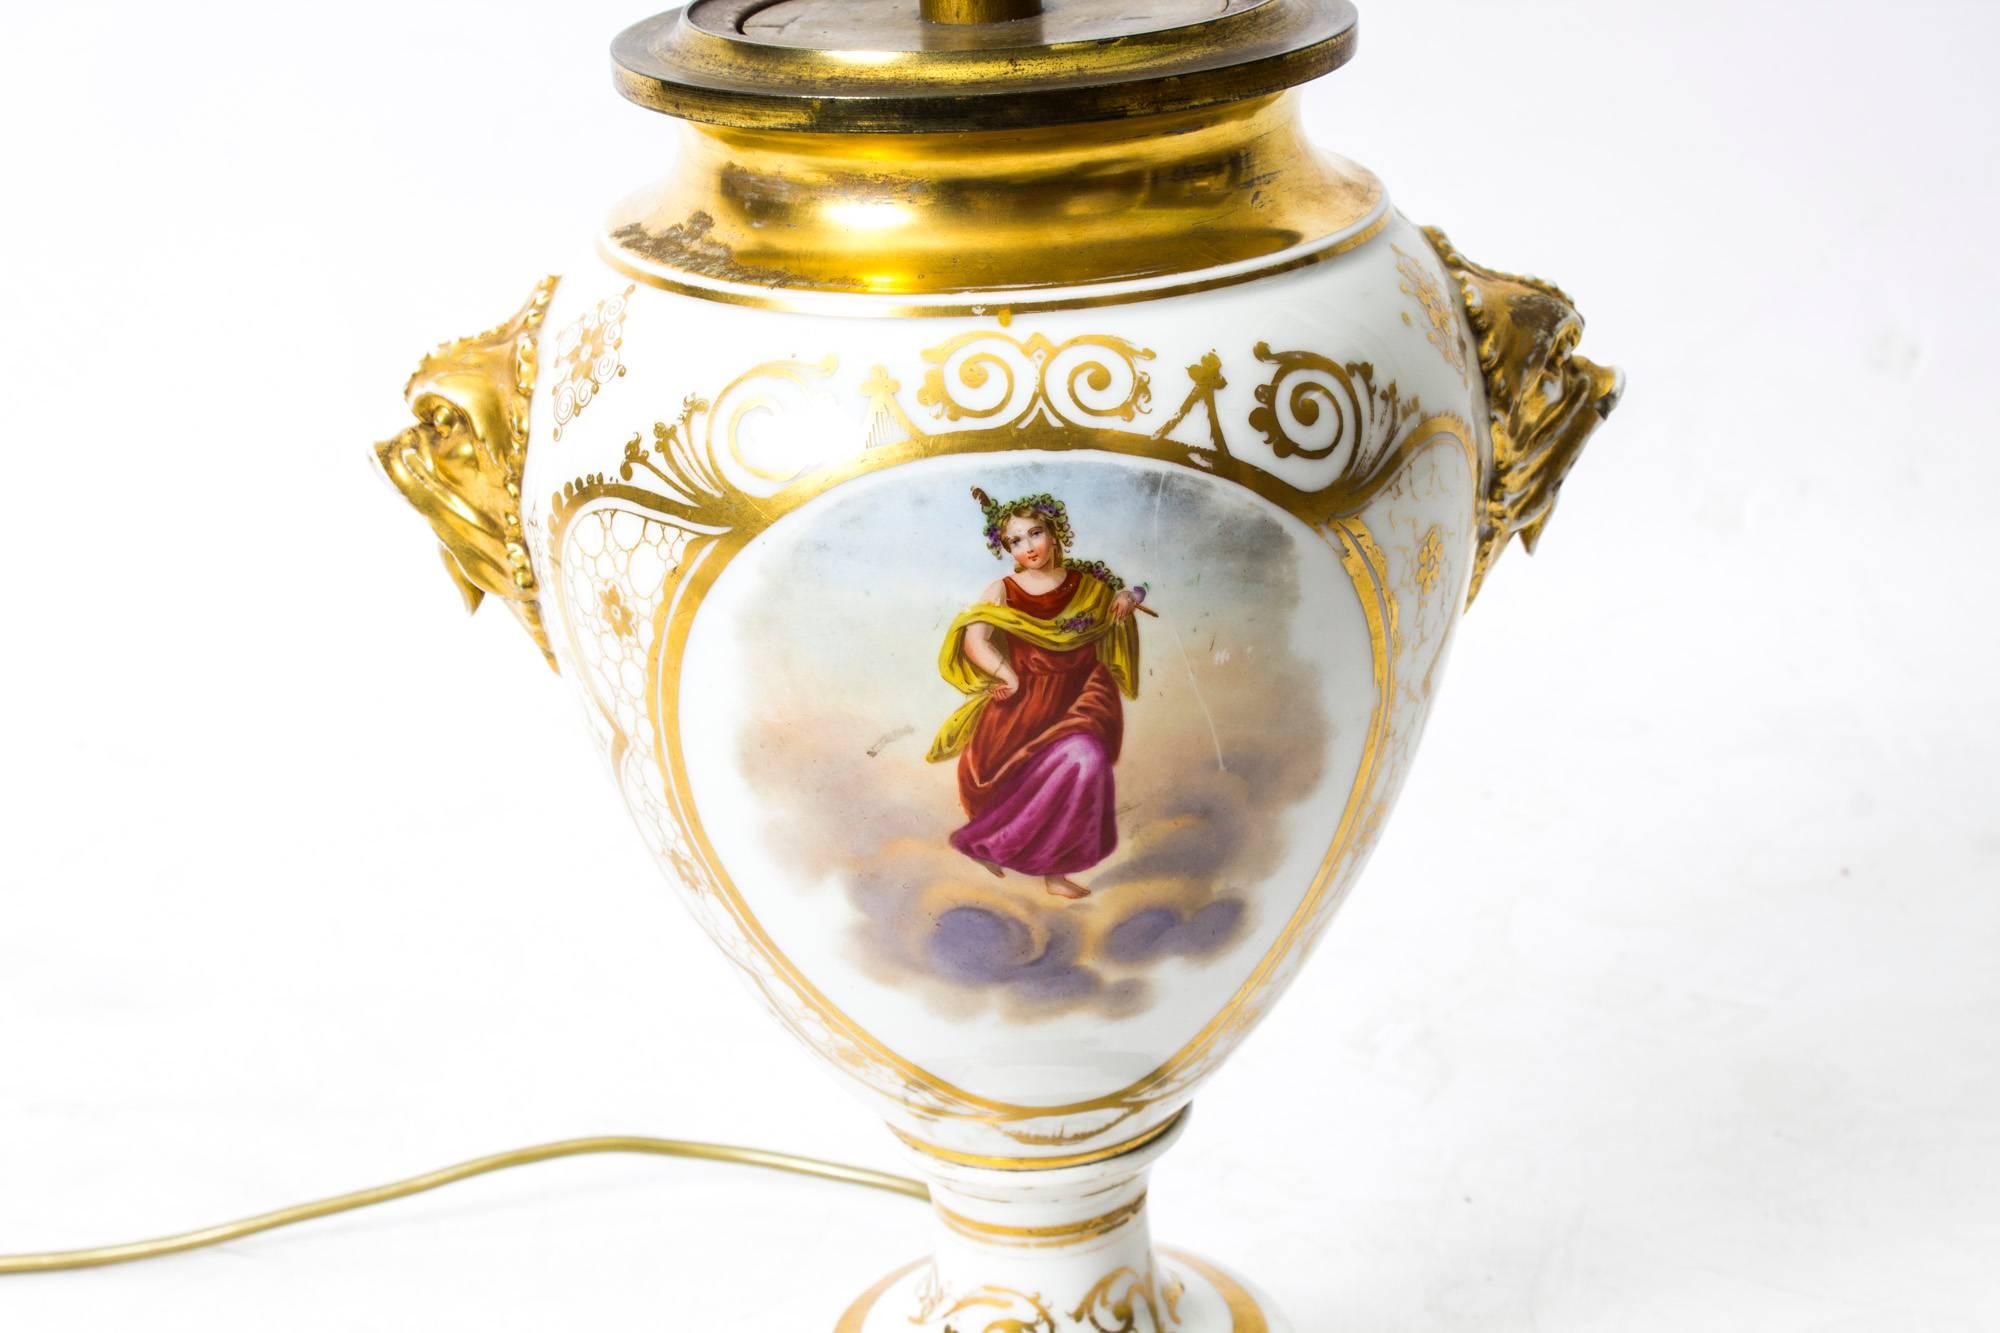 Une belle lampe en porcelaine française avec des scènes peintes à la main et une délicate décoration dorée, datant de 1850. 

La lampe présente une paire de panneaux ovales, l'un avec une divinité classique peinte à la main dans les nuages et